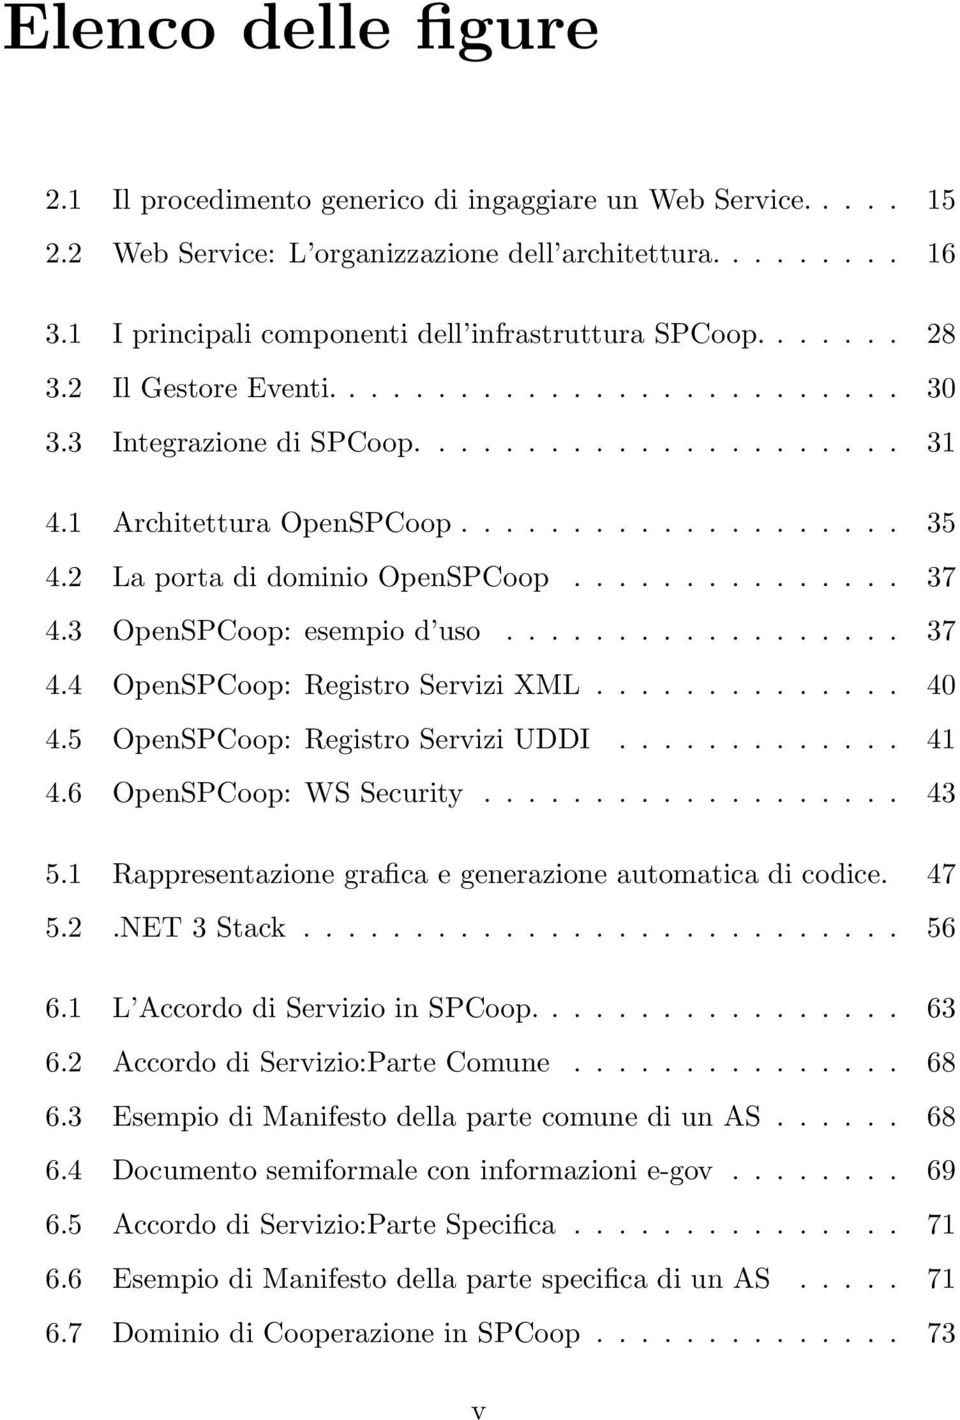 2 La porta di dominio OpenSPCoop............... 37 4.3 OpenSPCoop: esempio d uso.................. 37 4.4 OpenSPCoop: Registro Servizi XML.............. 40 4.5 OpenSPCoop: Registro Servizi UDDI............. 41 4.